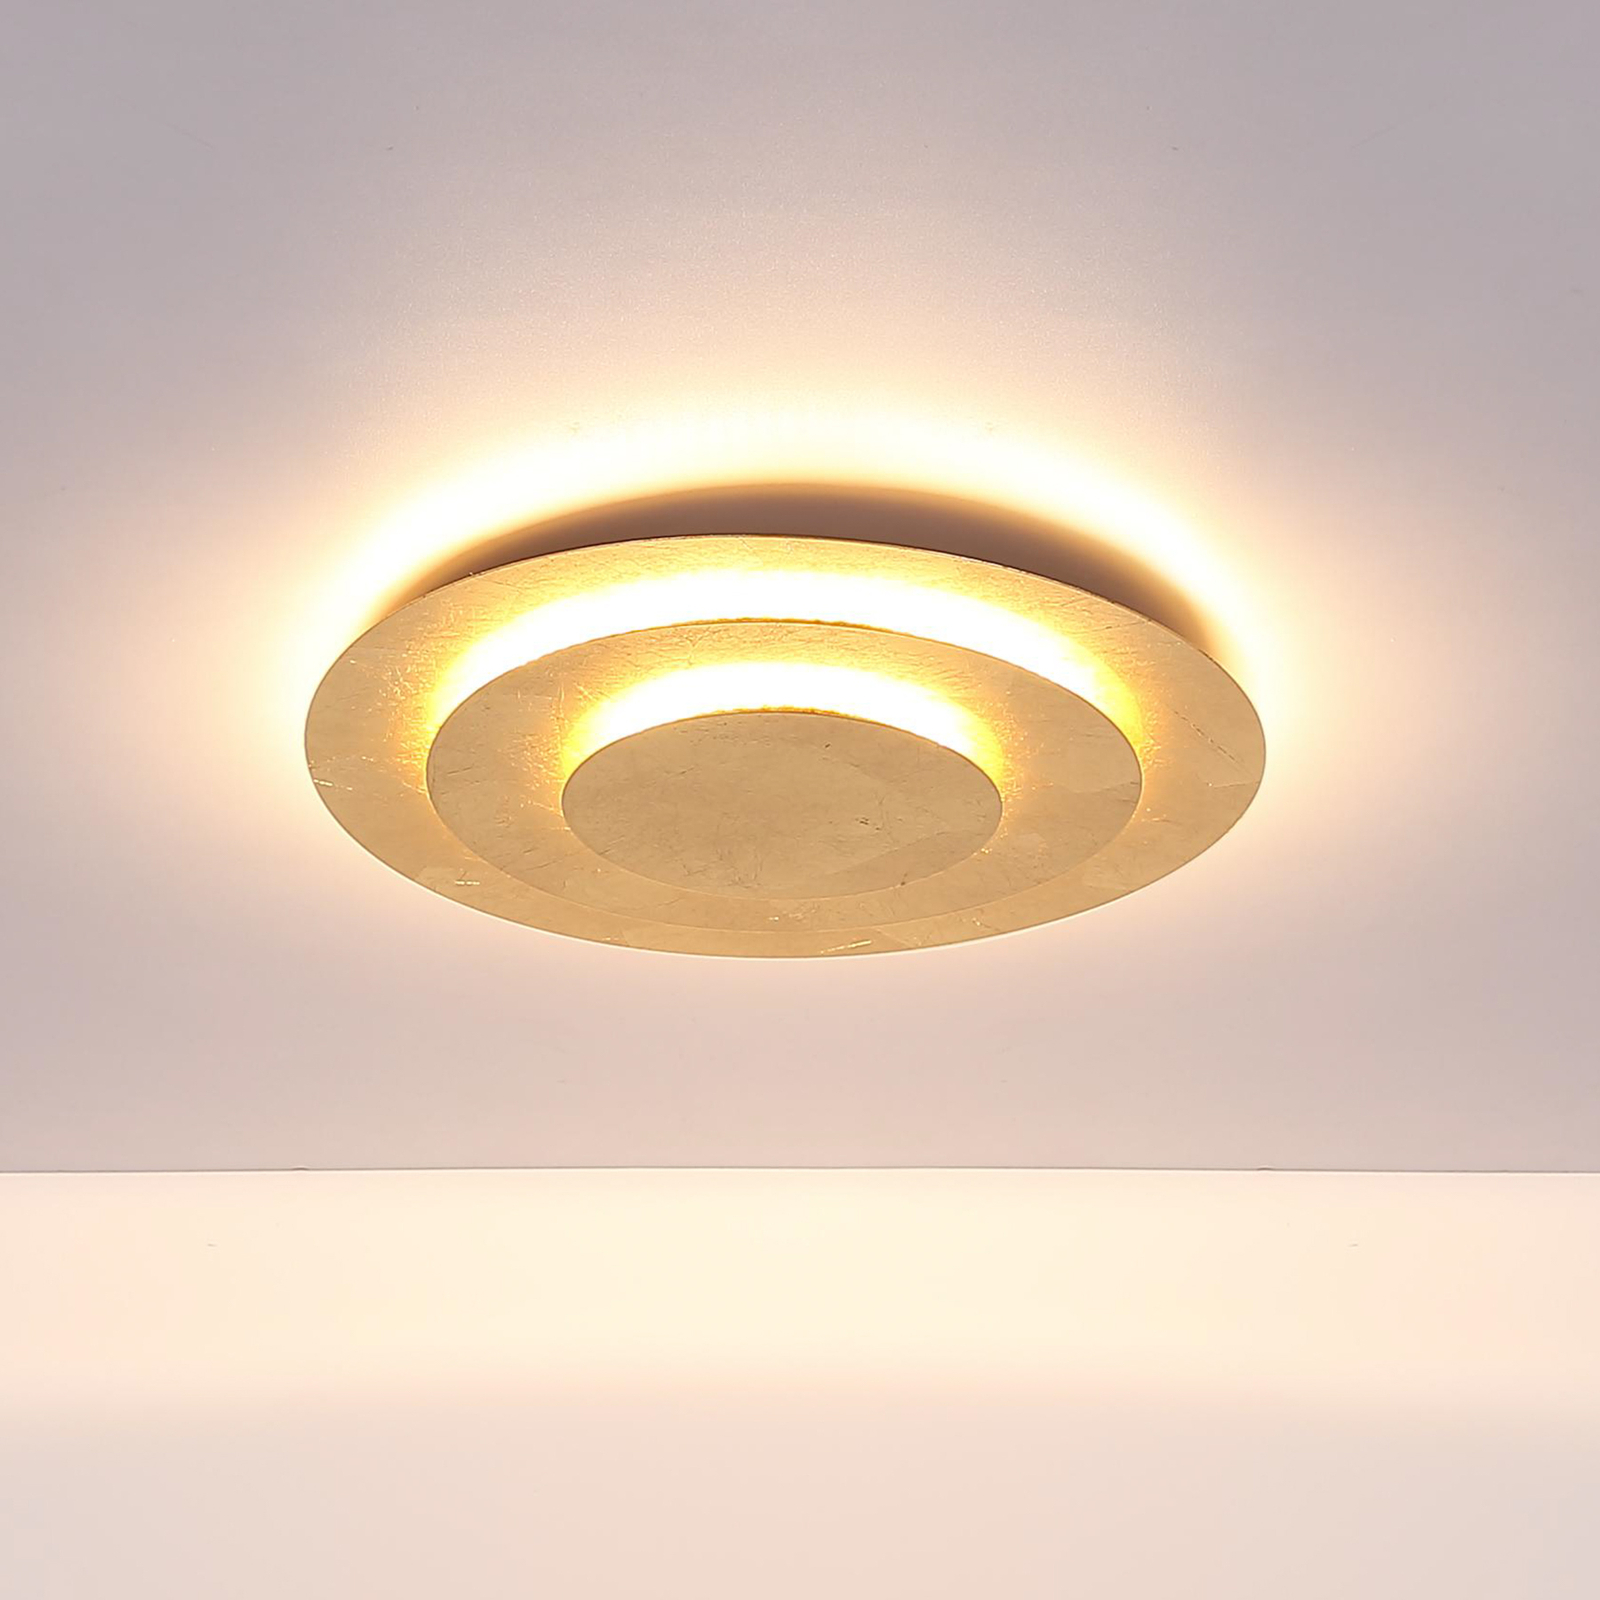 Heda plafondlamp, Ø 49 cm, goudkleurig, metaal